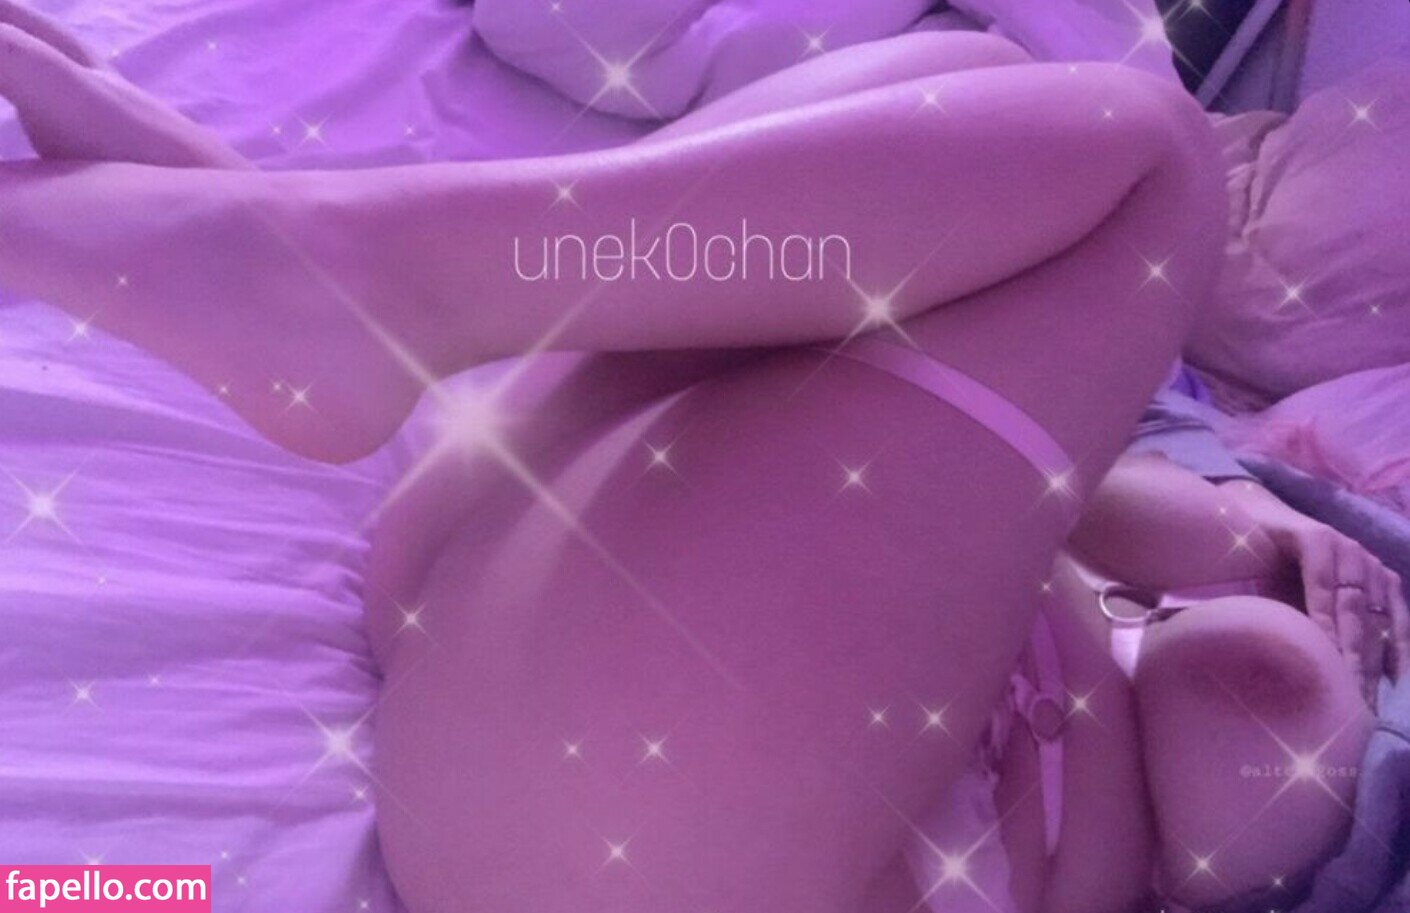 UnekoChan leaked nude photo #0008 (UnekoChan)